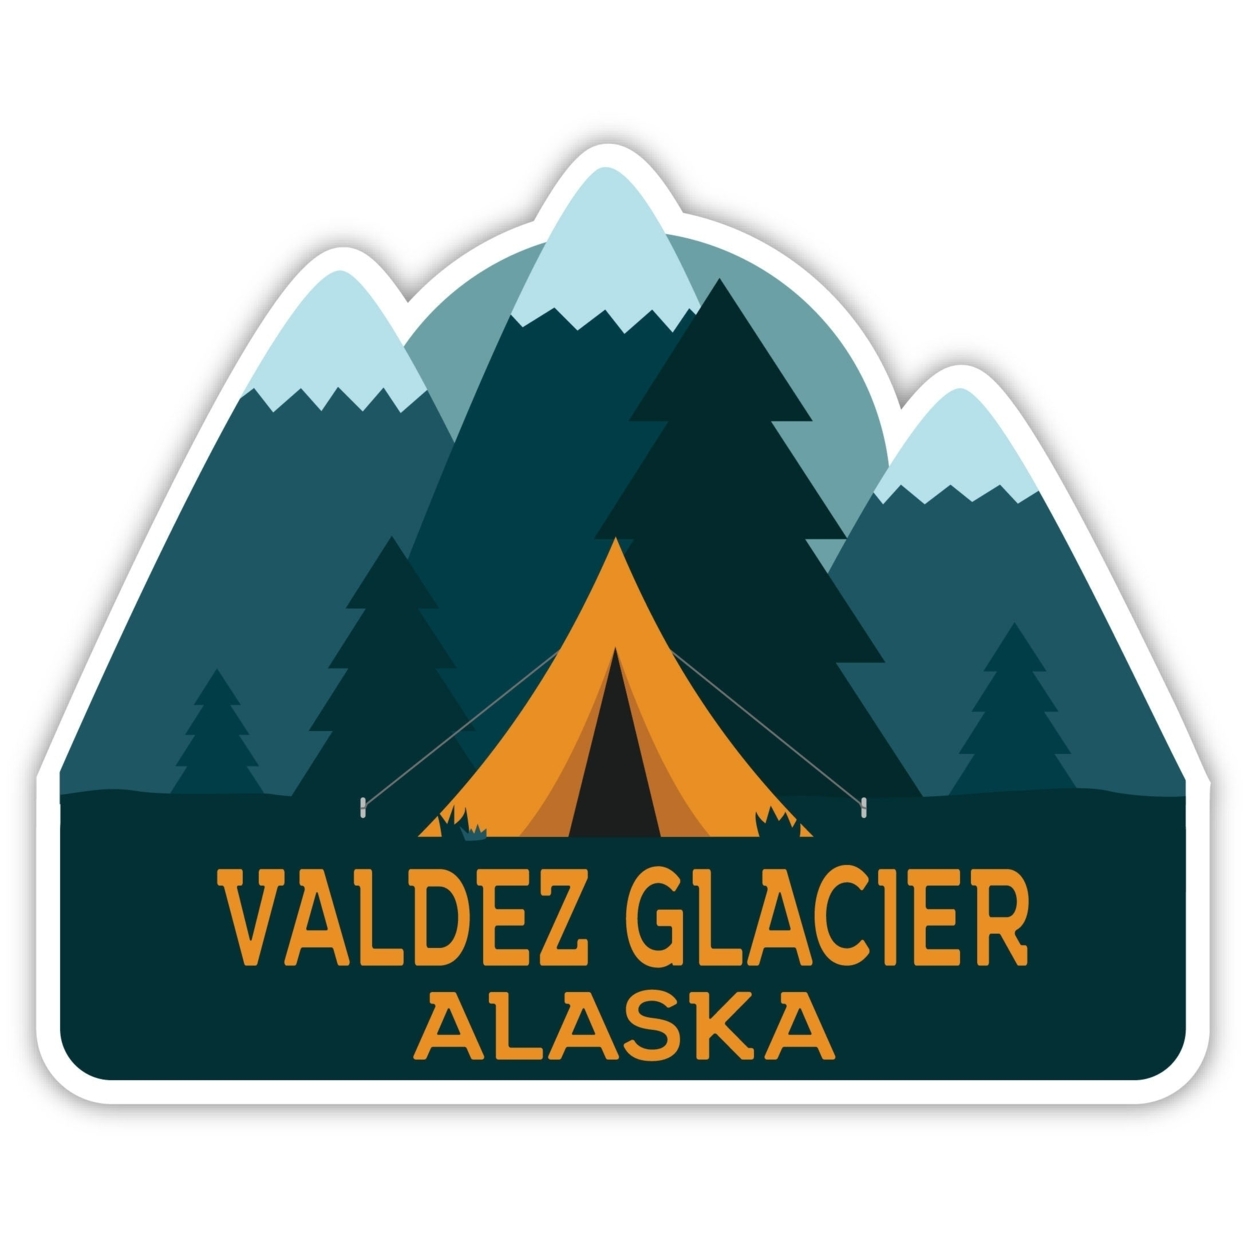 Valdez Glacier Alaska Souvenir Decorative Stickers (Choose Theme And Size) - Single Unit, 2-Inch, Adventures Awaits